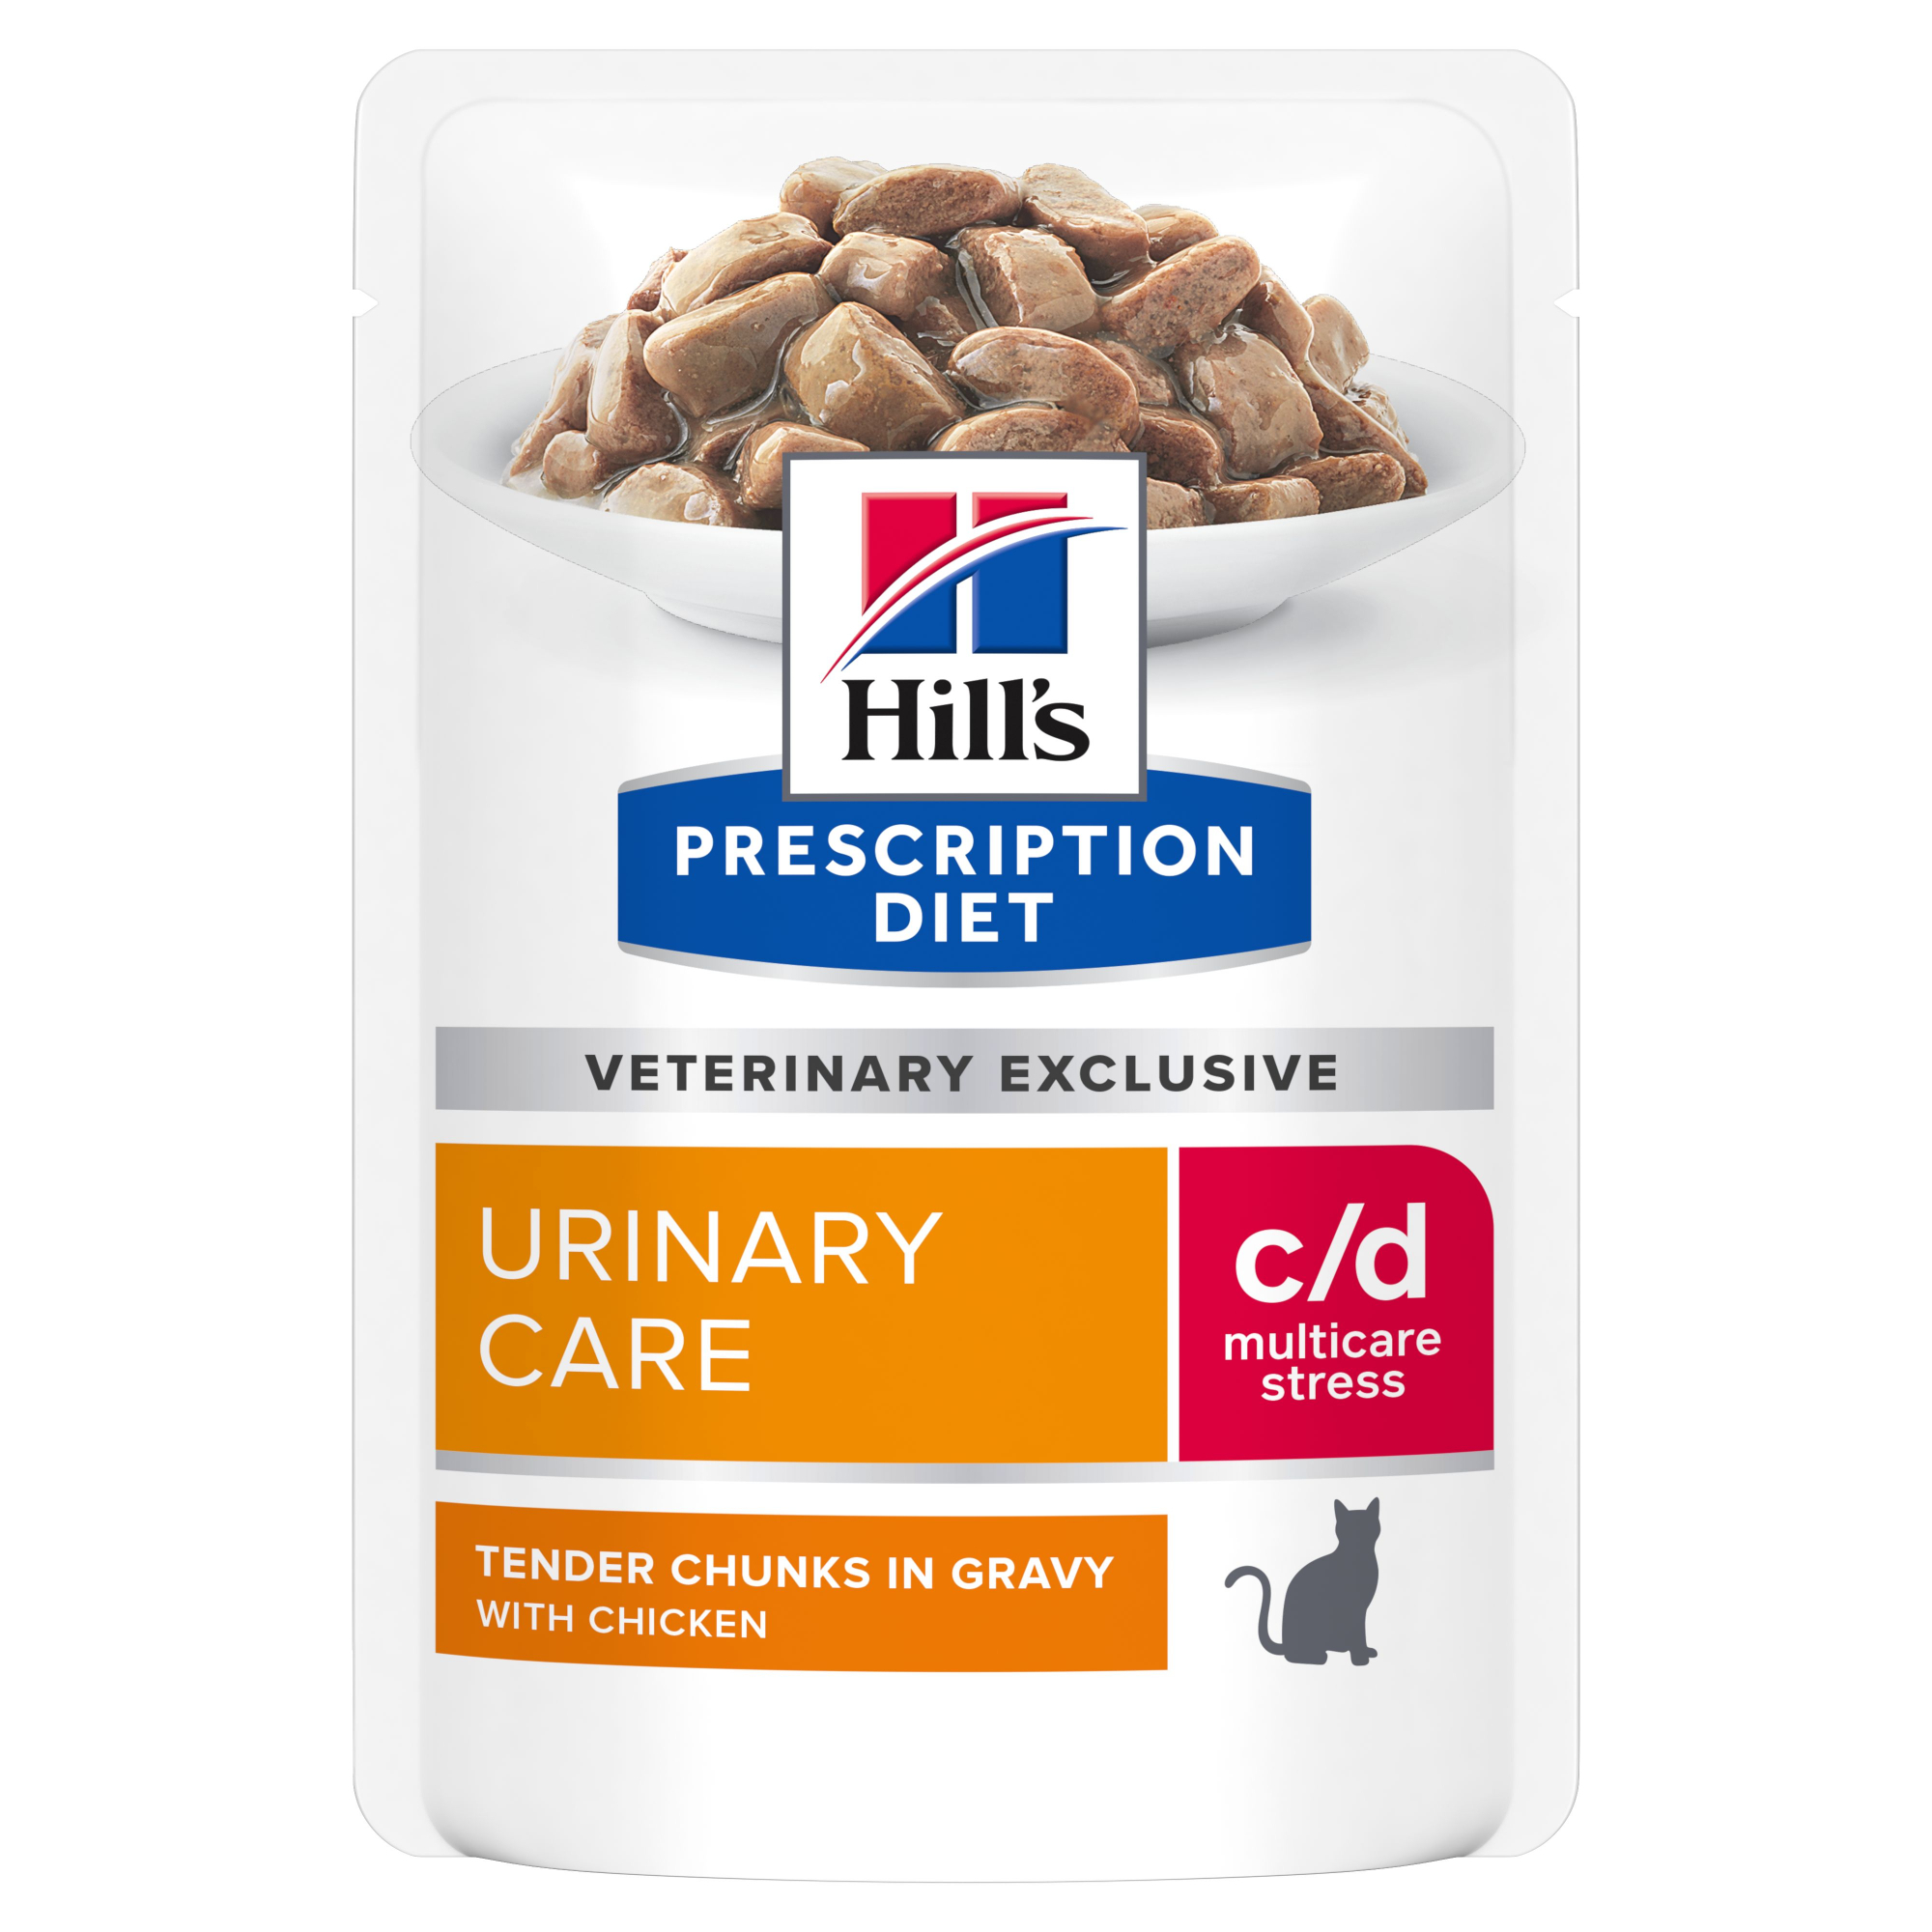 Sachê Refeição HILL'S Prescription Diet c/d Urinary Stress Multicare para Gato - 2 sabores à escolha